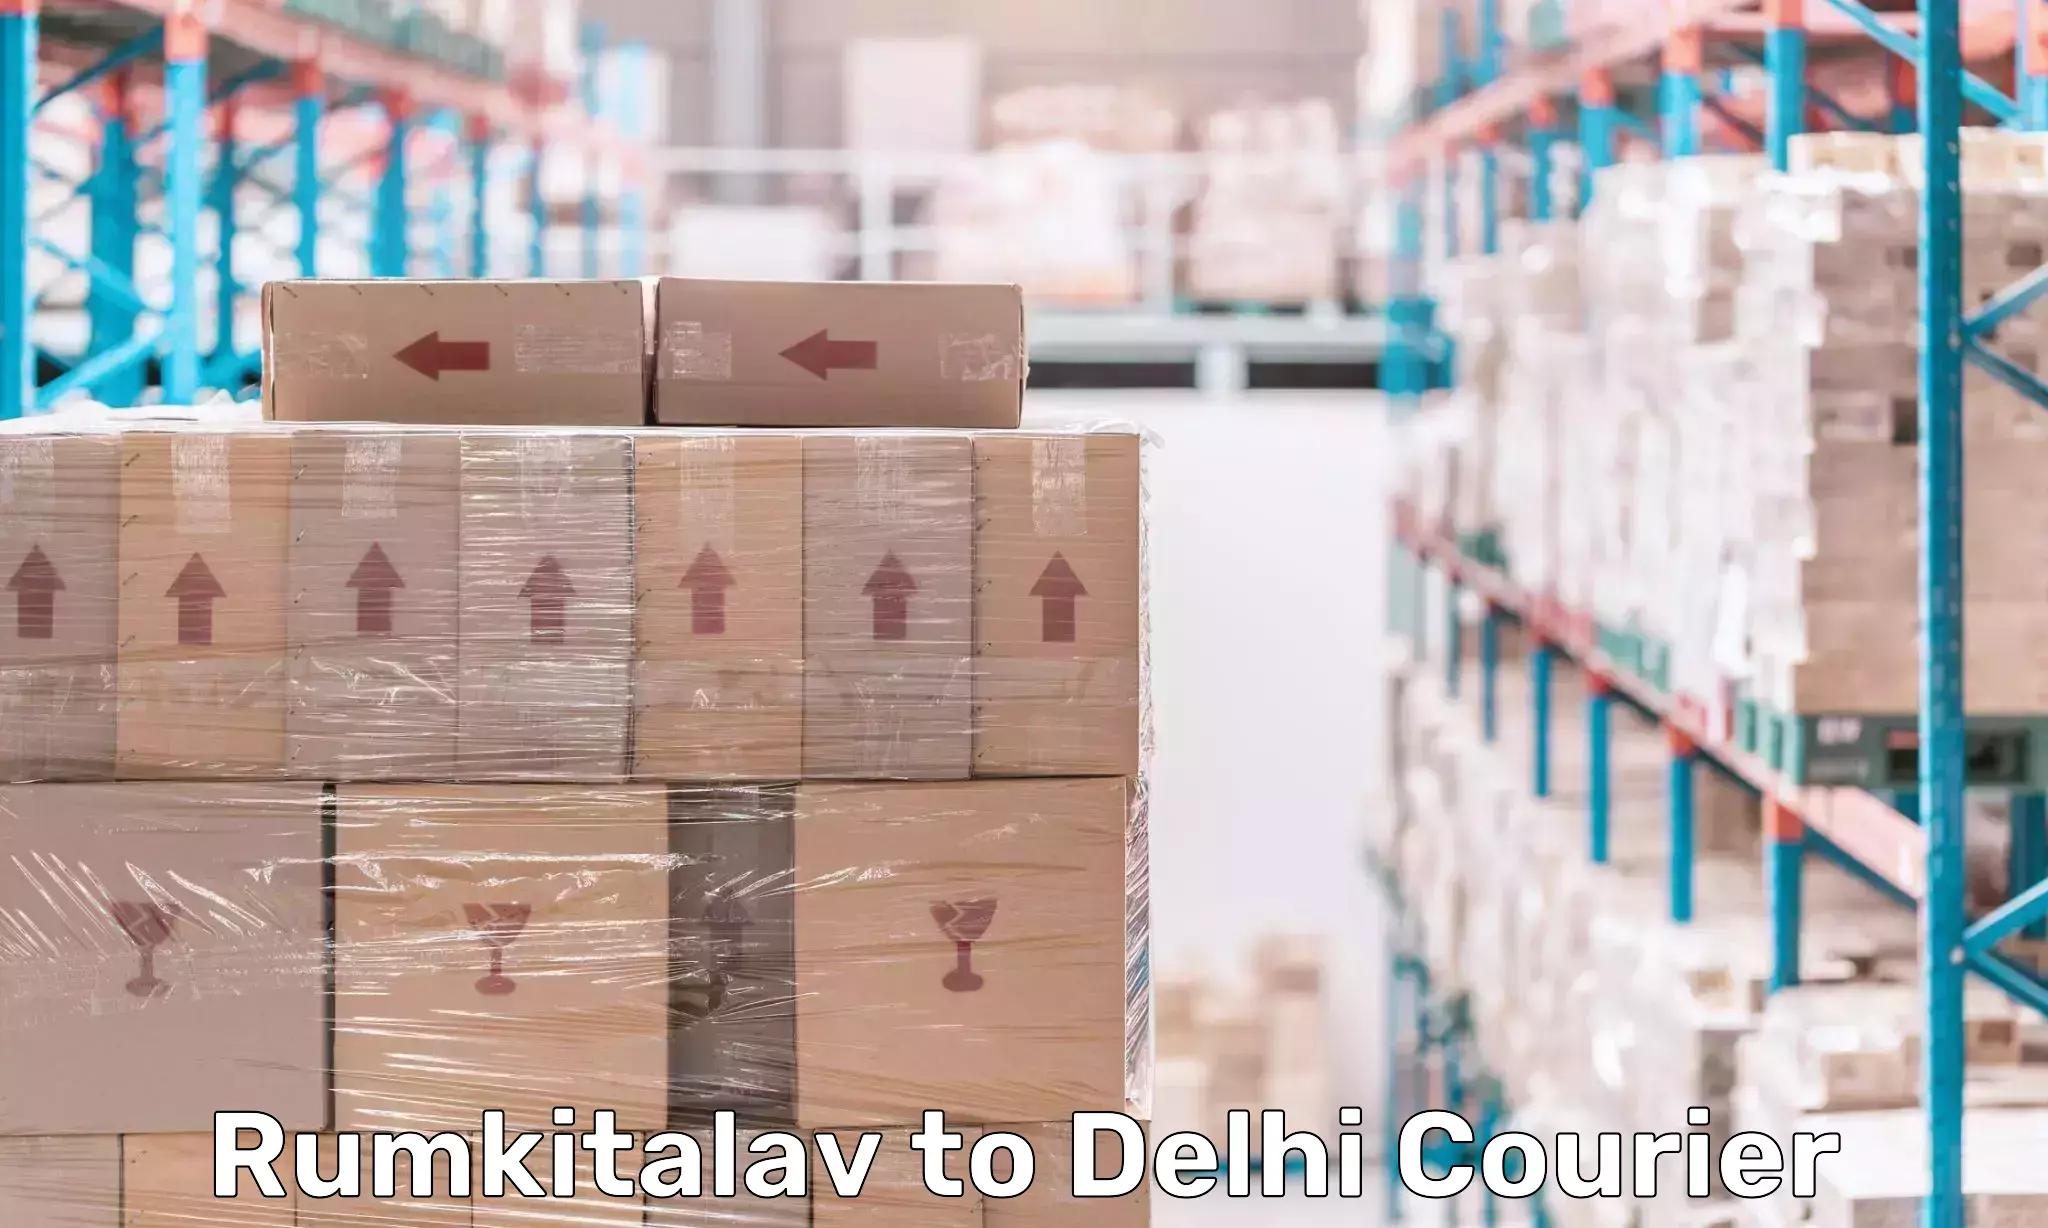 Doorstep delivery service Rumkitalav to Delhi